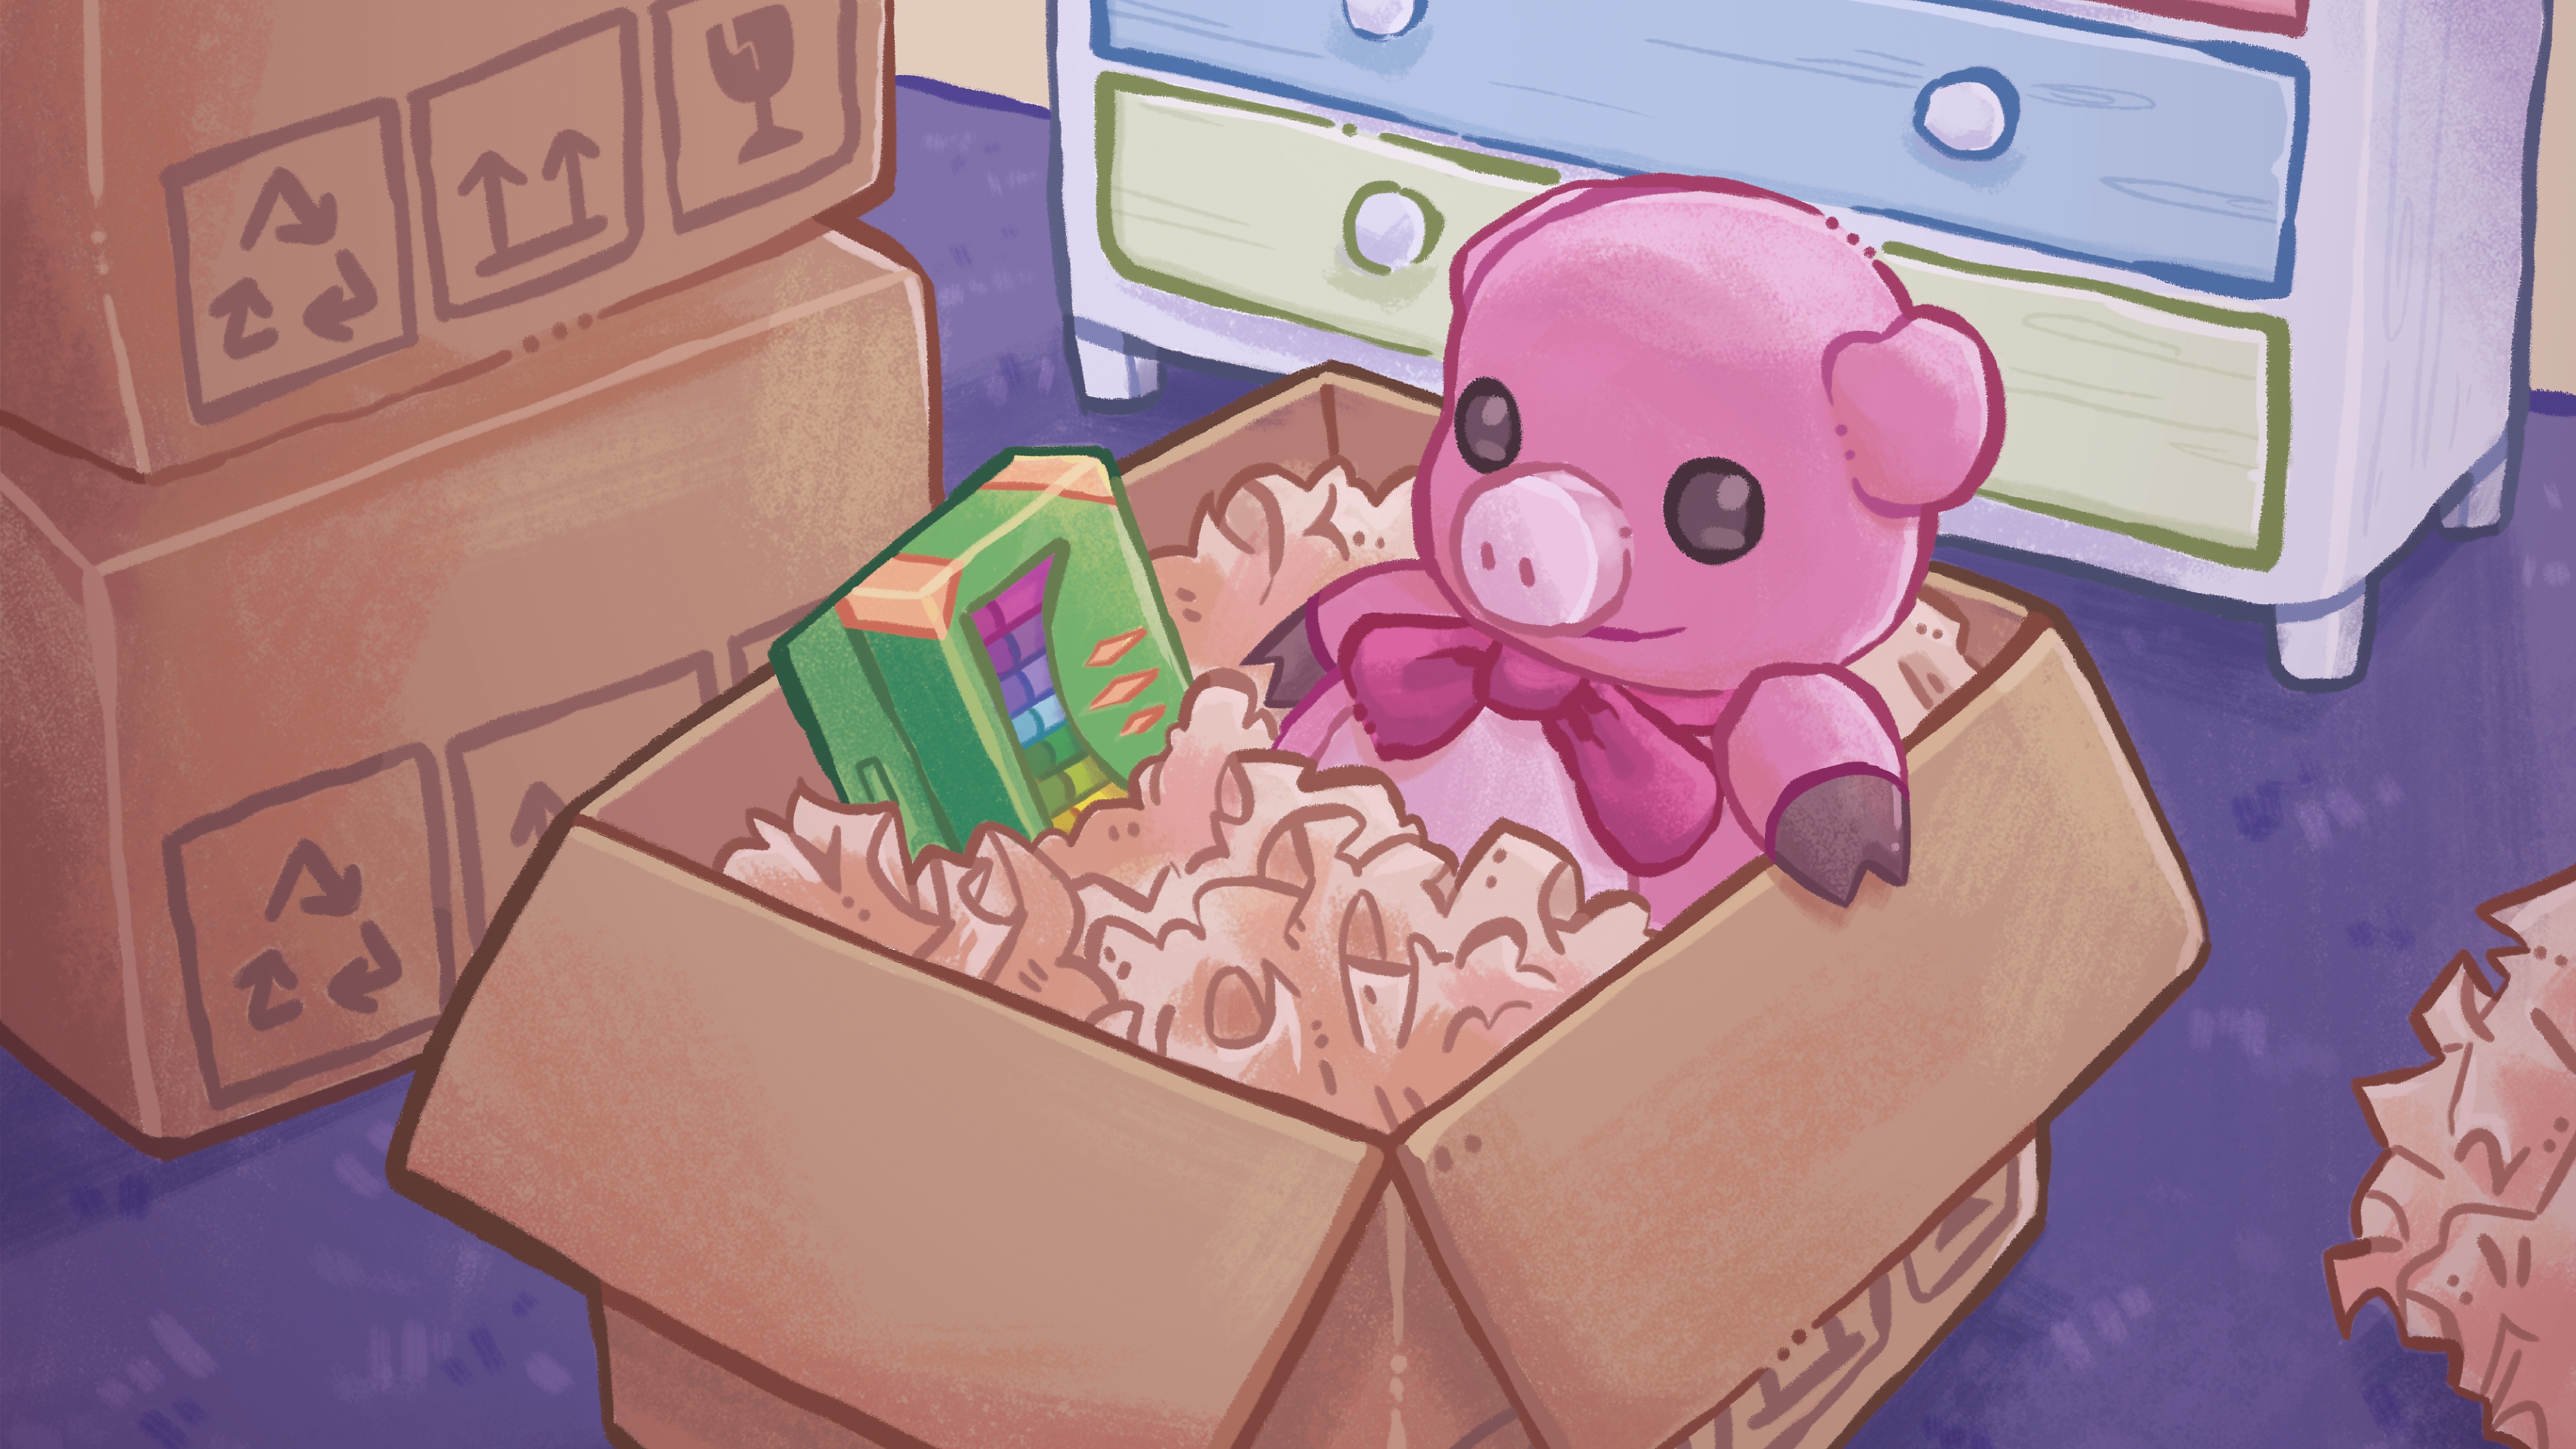 Unpacking ana görseli, oyuncak bir ayı ile karton bir kutu içindeki bir pastel boya kutusunun renkli bir el çizimine yer veriyor.